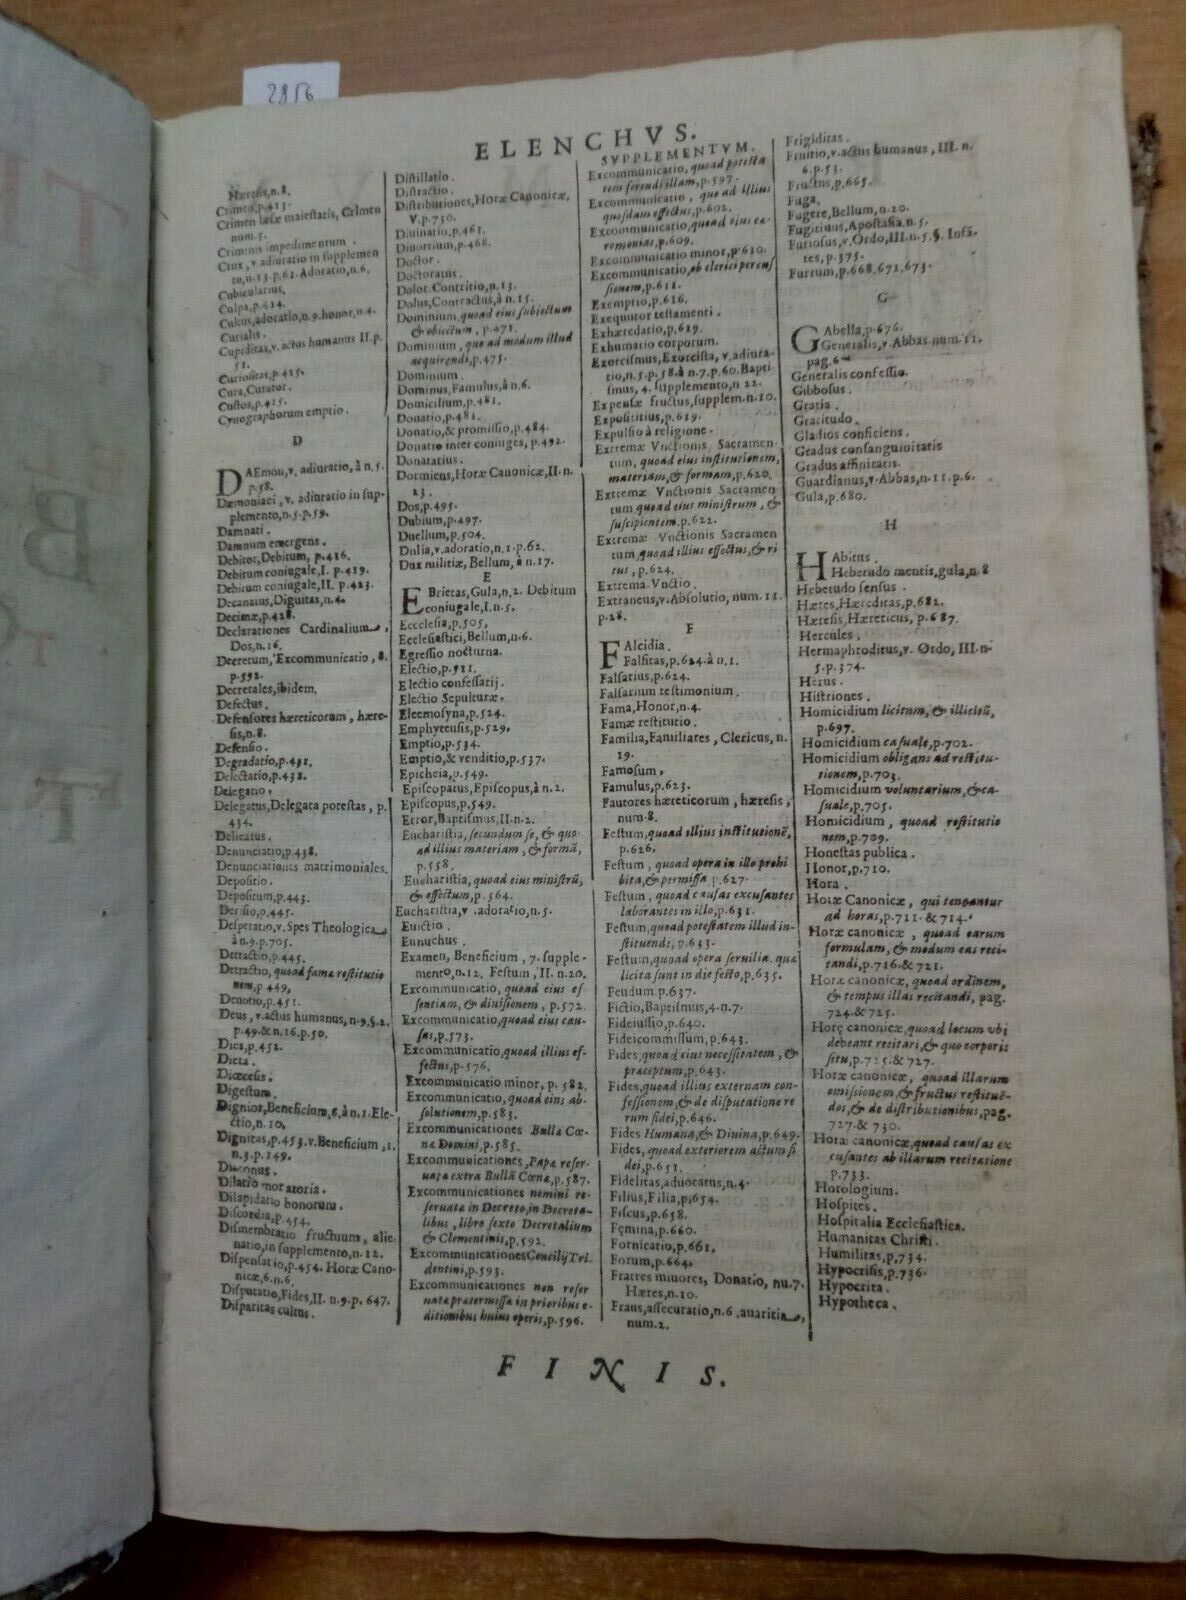 (1653?) P. F. Eligii Bassaei capucini. Flores Totius theologiae practi